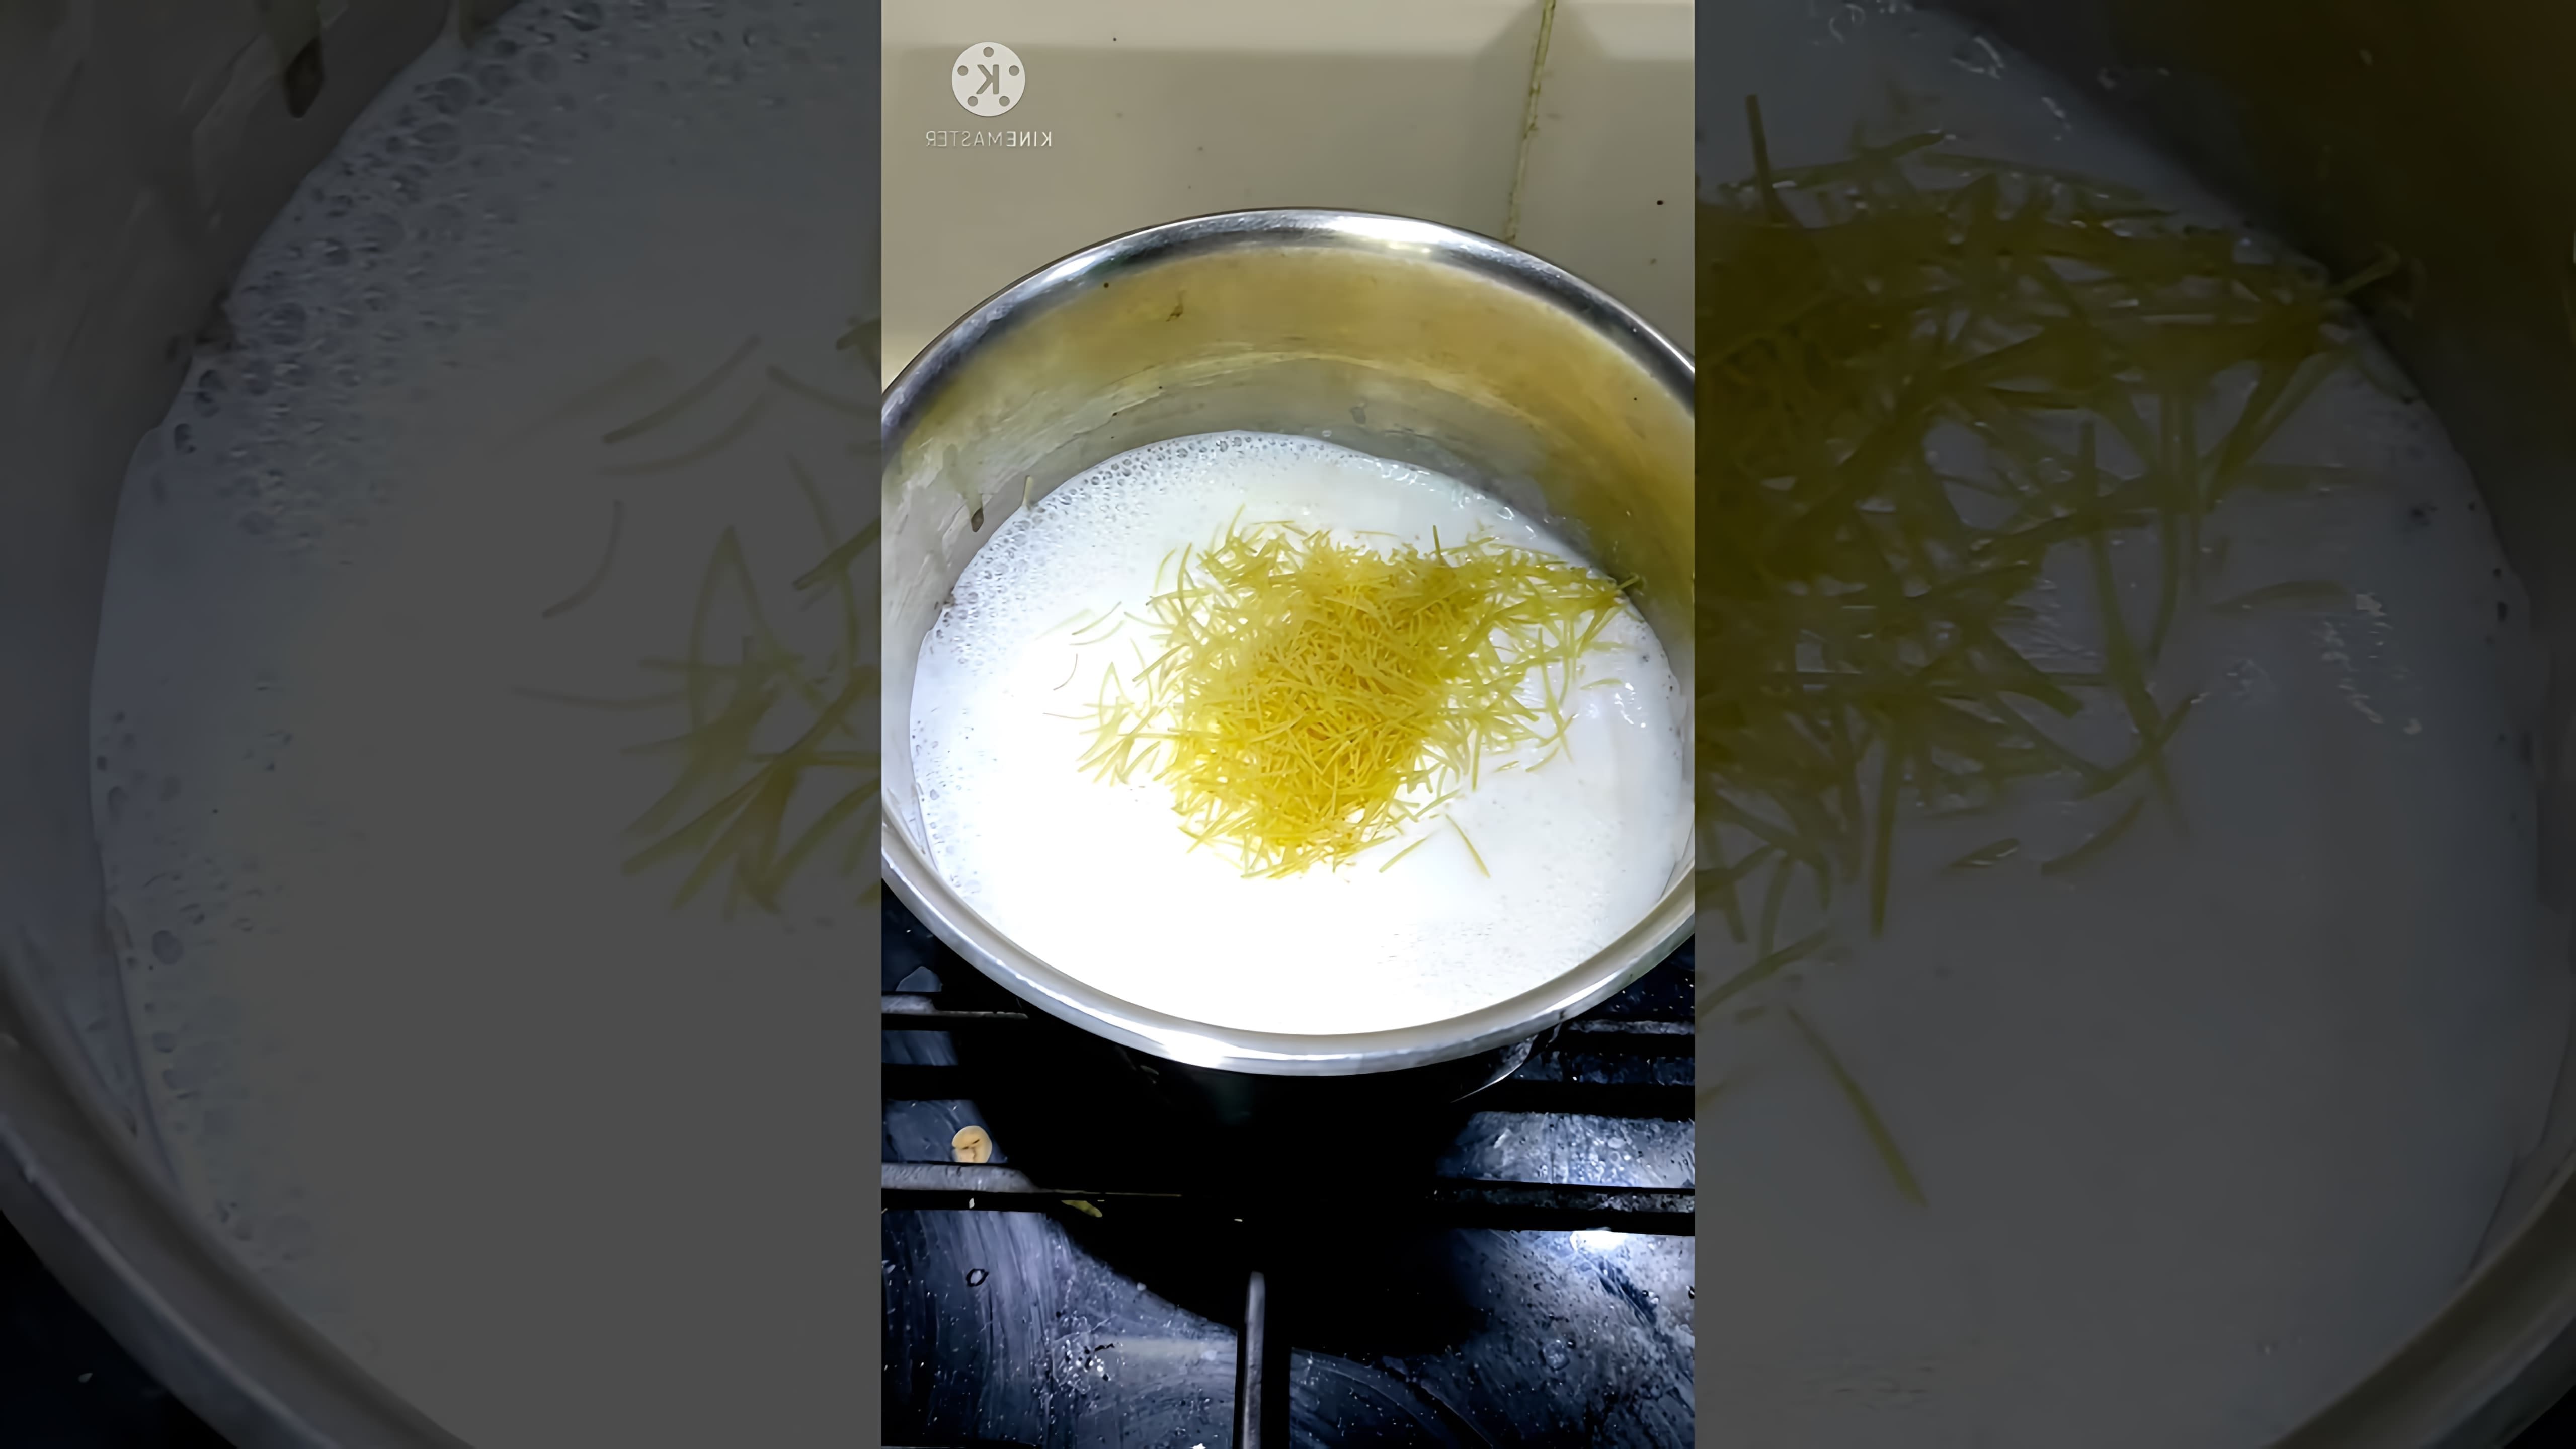 В этом видео-ролике мы увидим, как готовится молочная вермишель или молочный суп